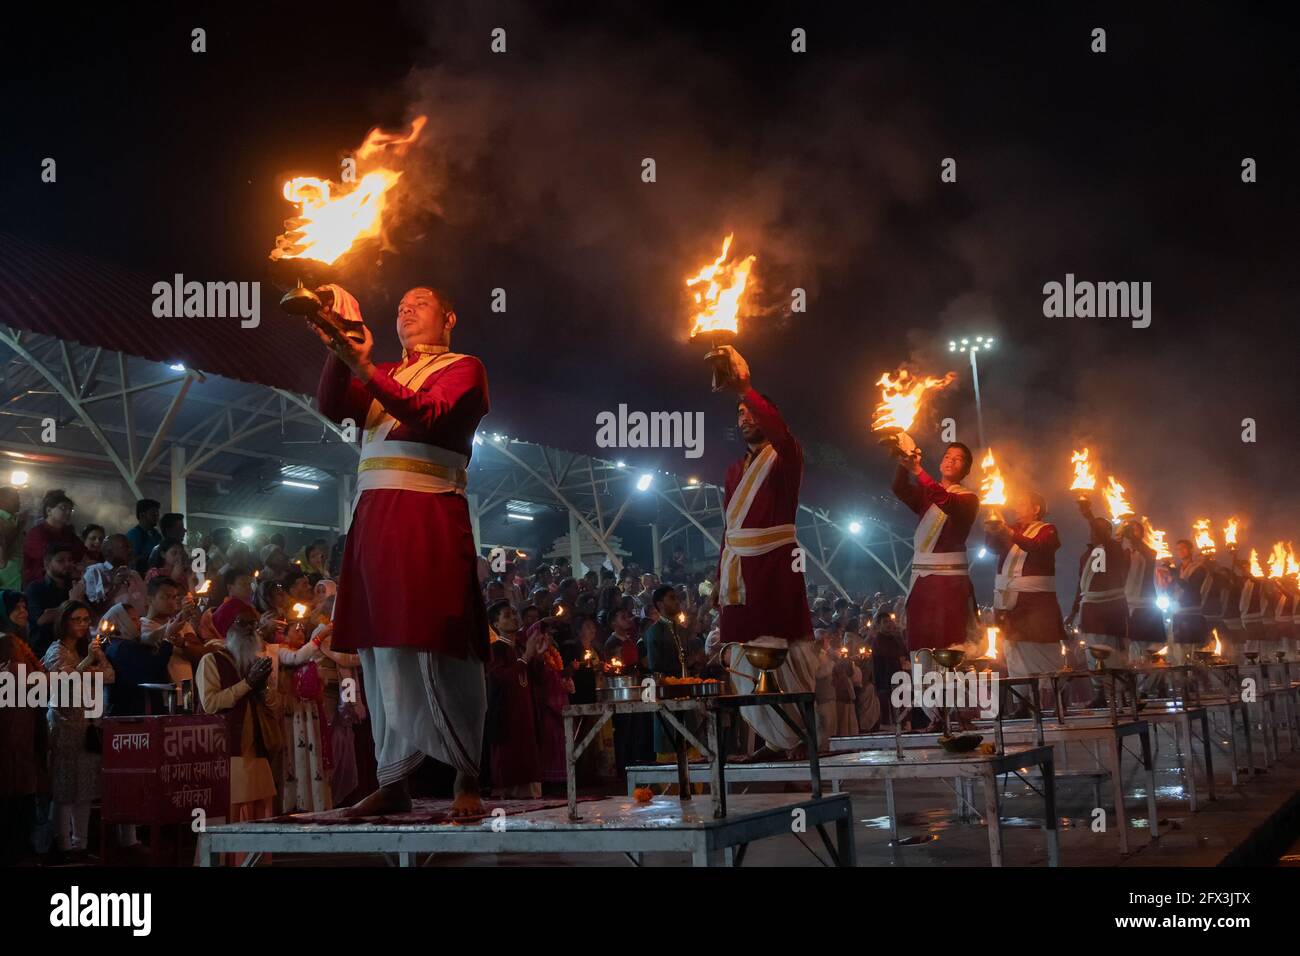 TRIBENI GHAT, RISHIKESH, UTTARAKHAND, INDIEN - OKTOBER 29 2018 : berühmte Ganga Aaarti am Ufer, Gebet für den Fluss Ganga von Hunderten von hinduistischen Anhängern Stockfoto